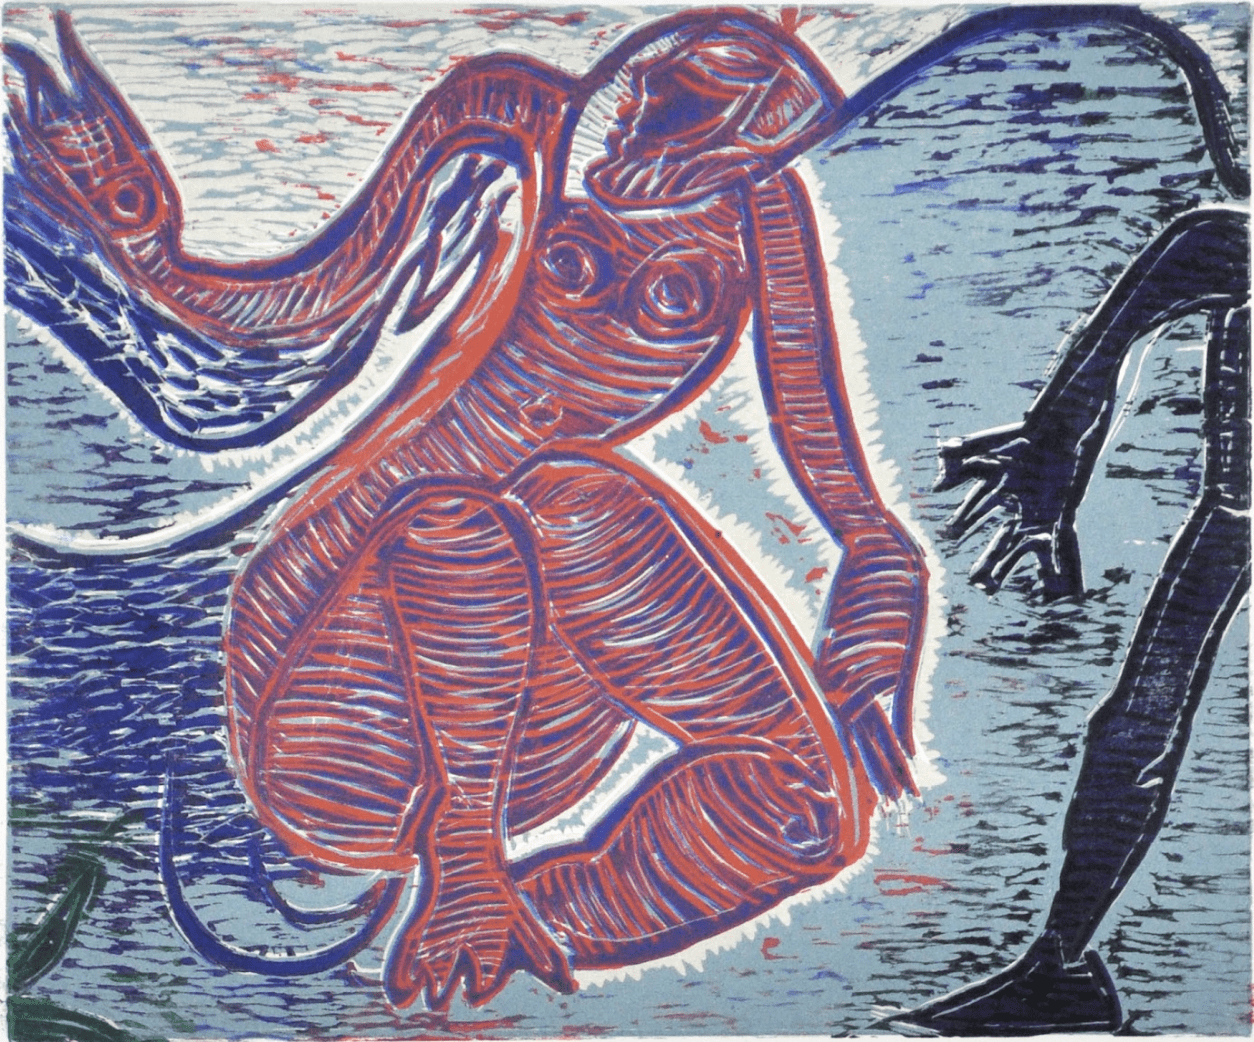 print of a human-like figure on a blue background